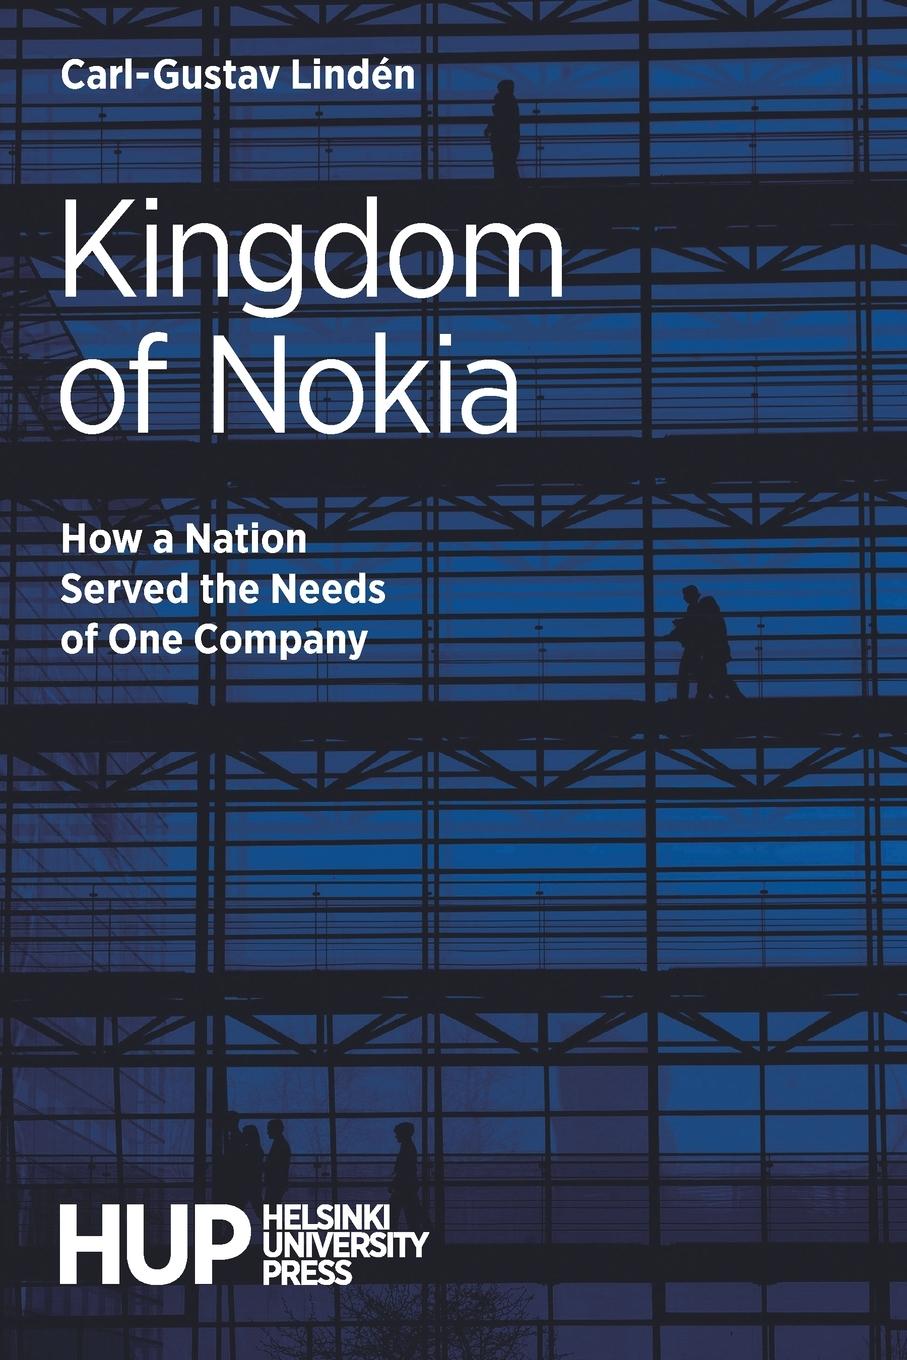 Carte Kingdom of Nokia Linden Carl-Gustav Linden